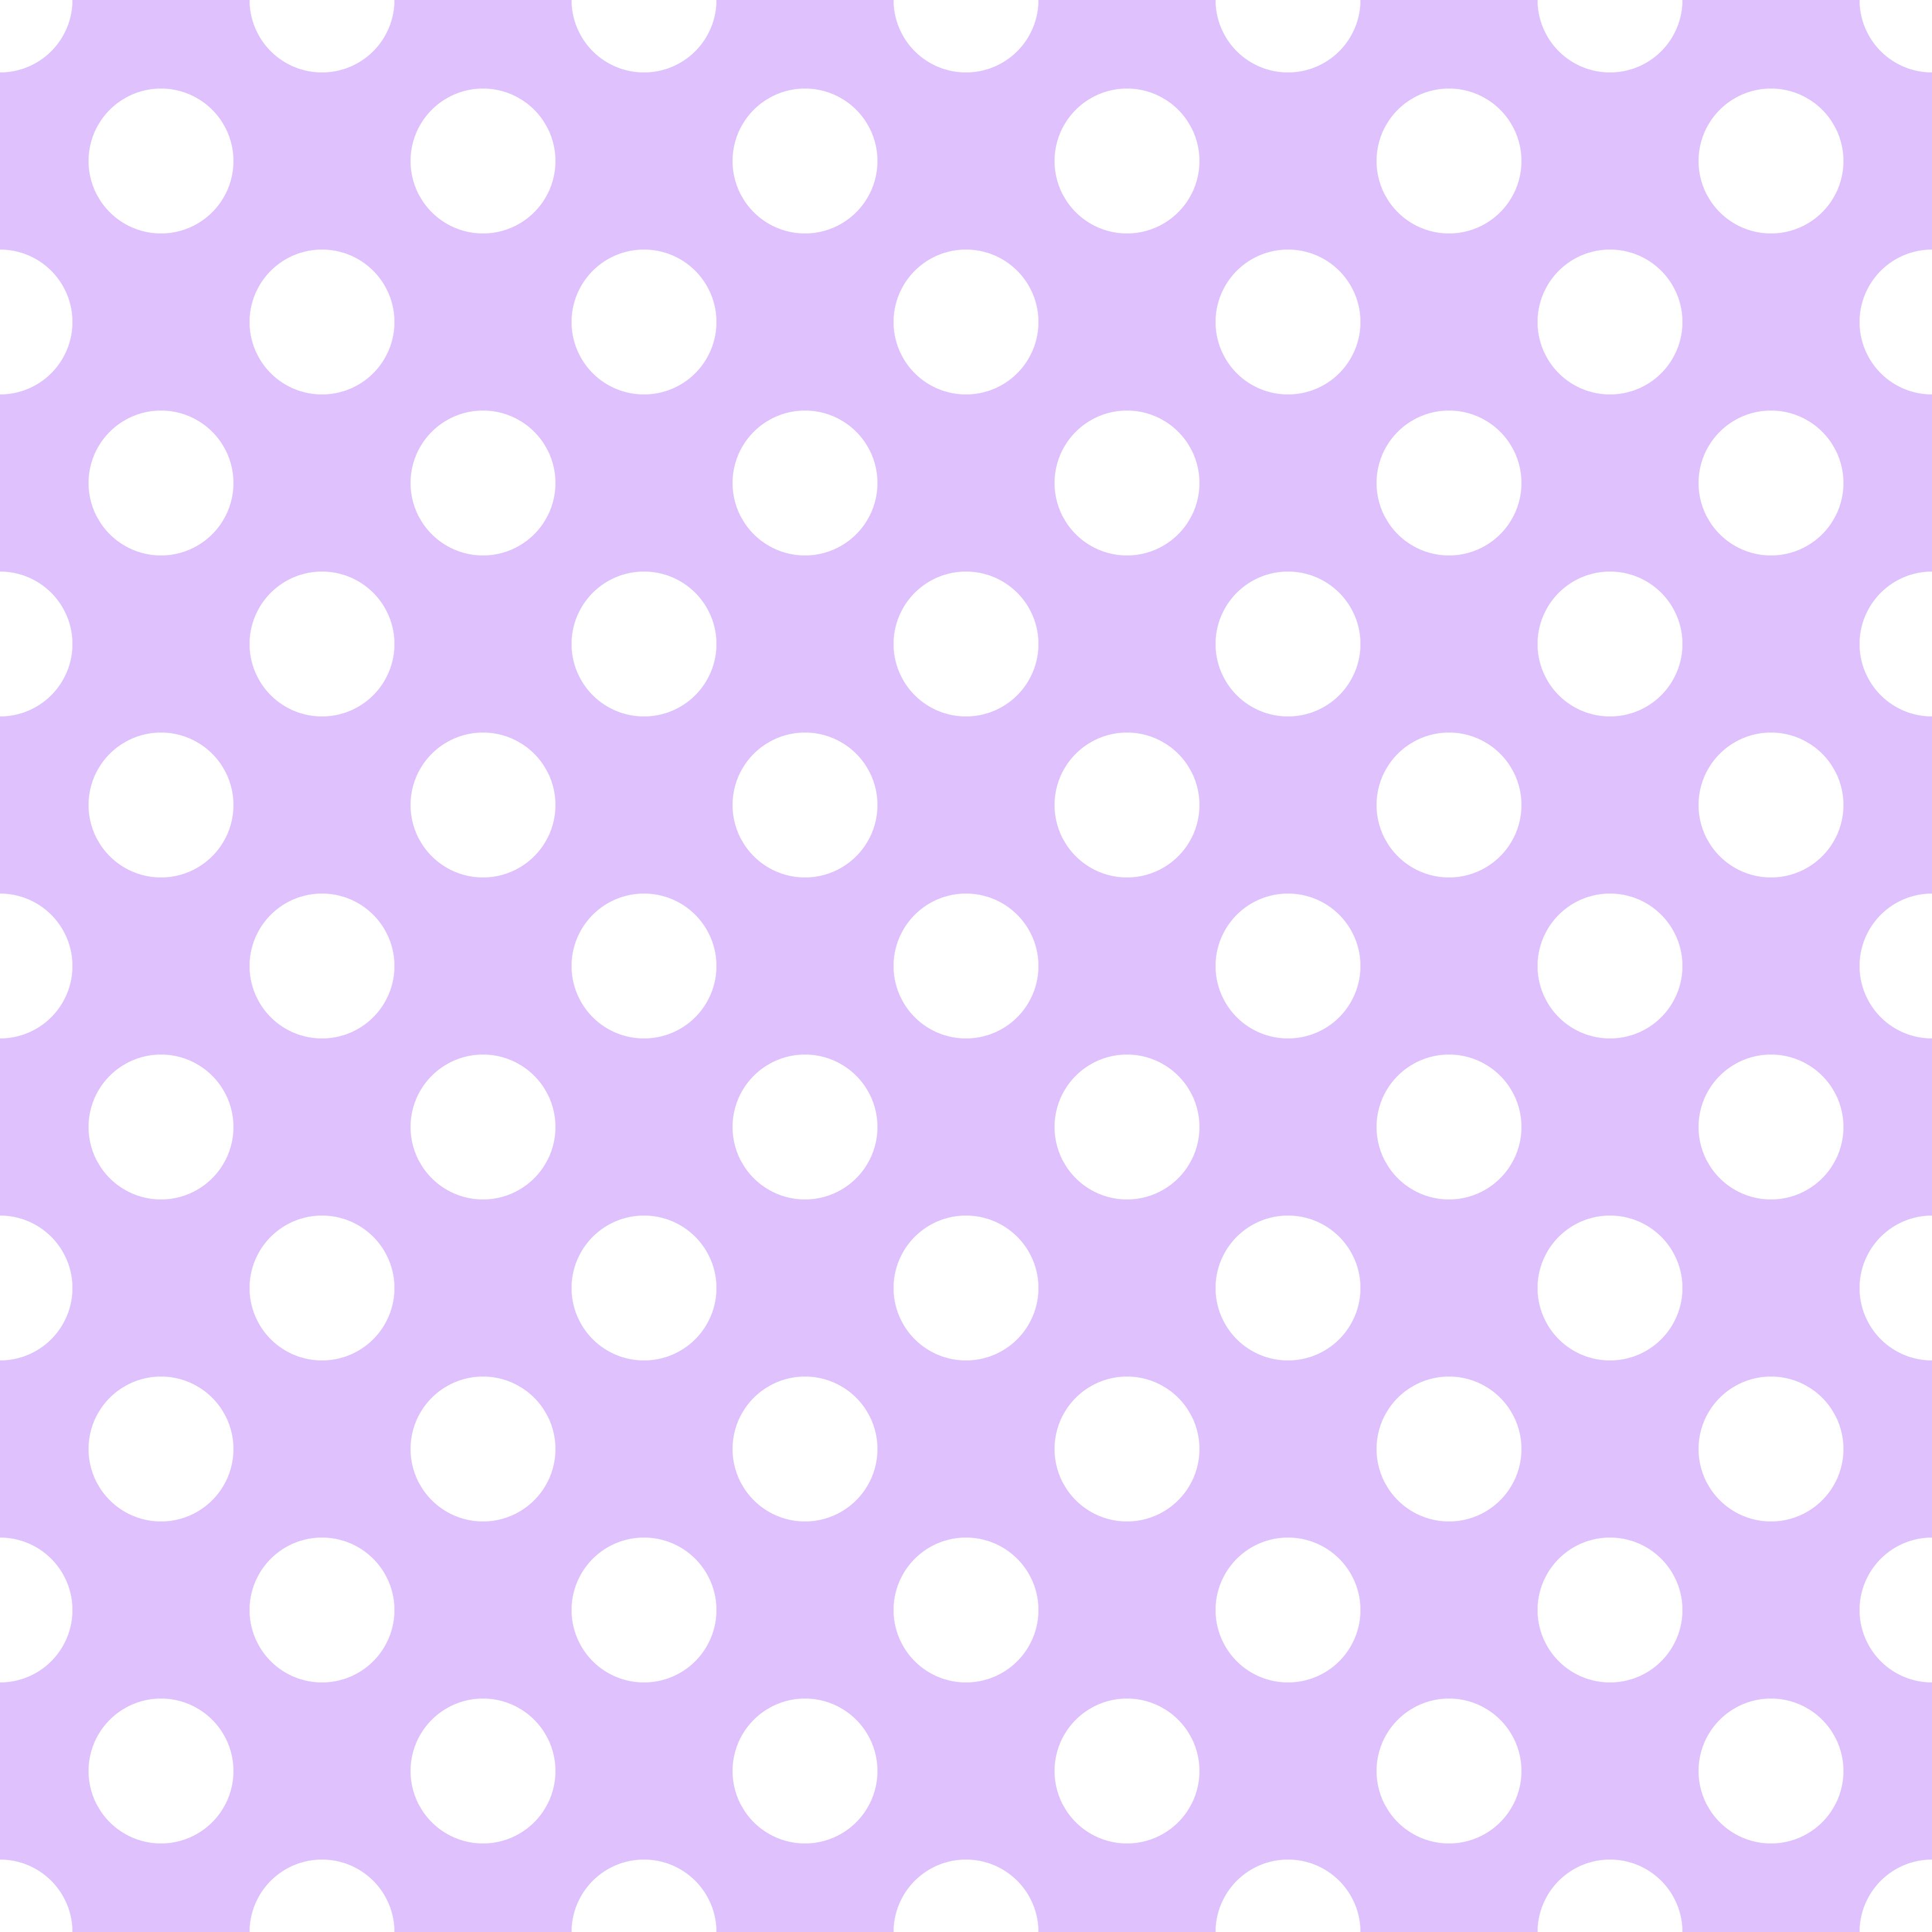 Polka Dot 1 cm Mor Salkım Rengi - Beyaz Puantiye Dekoratif Baskı Kumaş